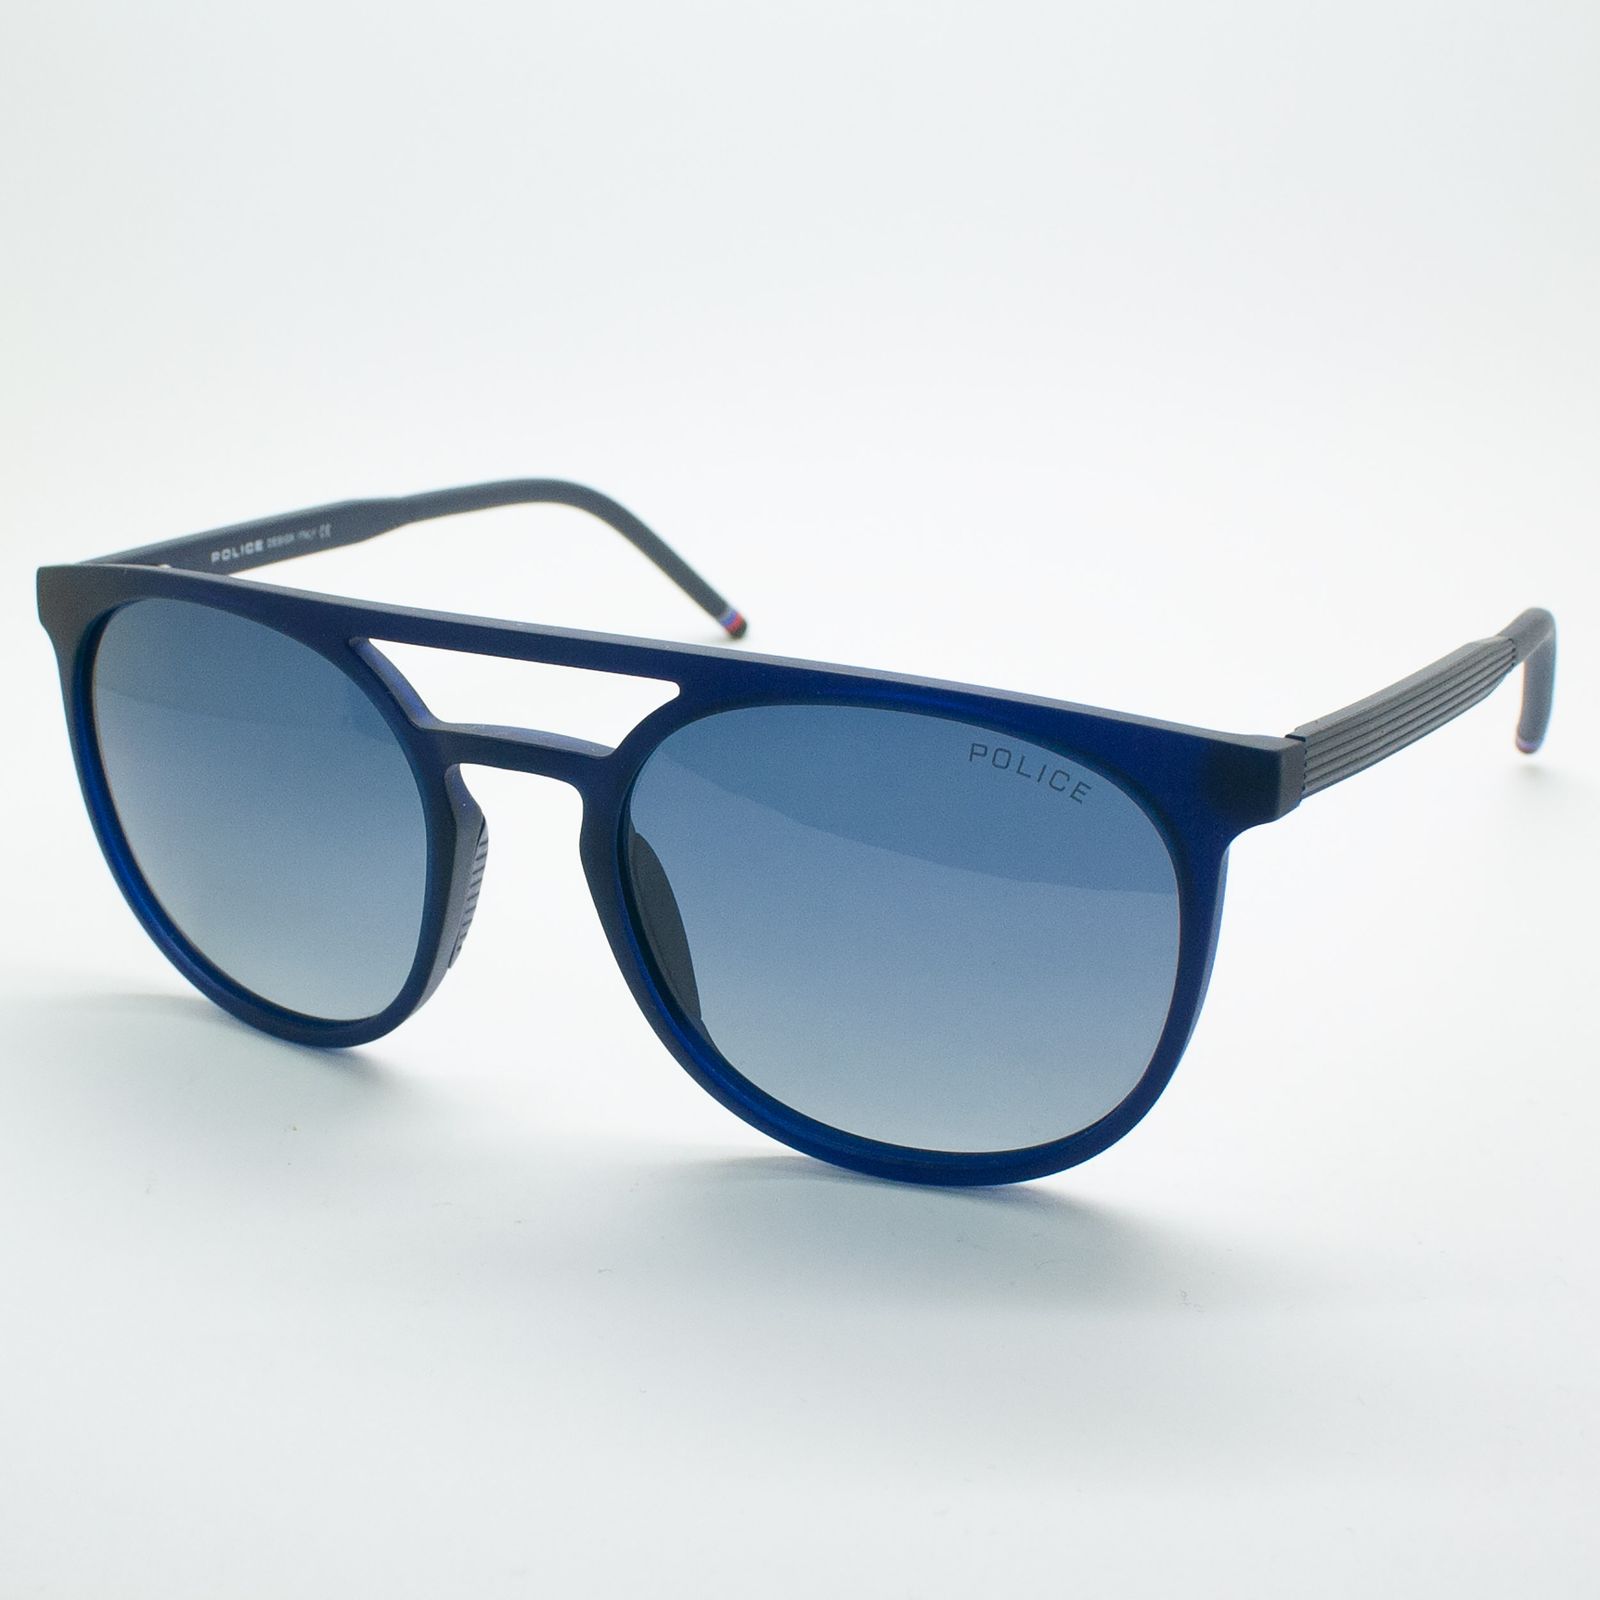 عینک آفتابی پلیس مدل FC05-11 C04 -  - 4